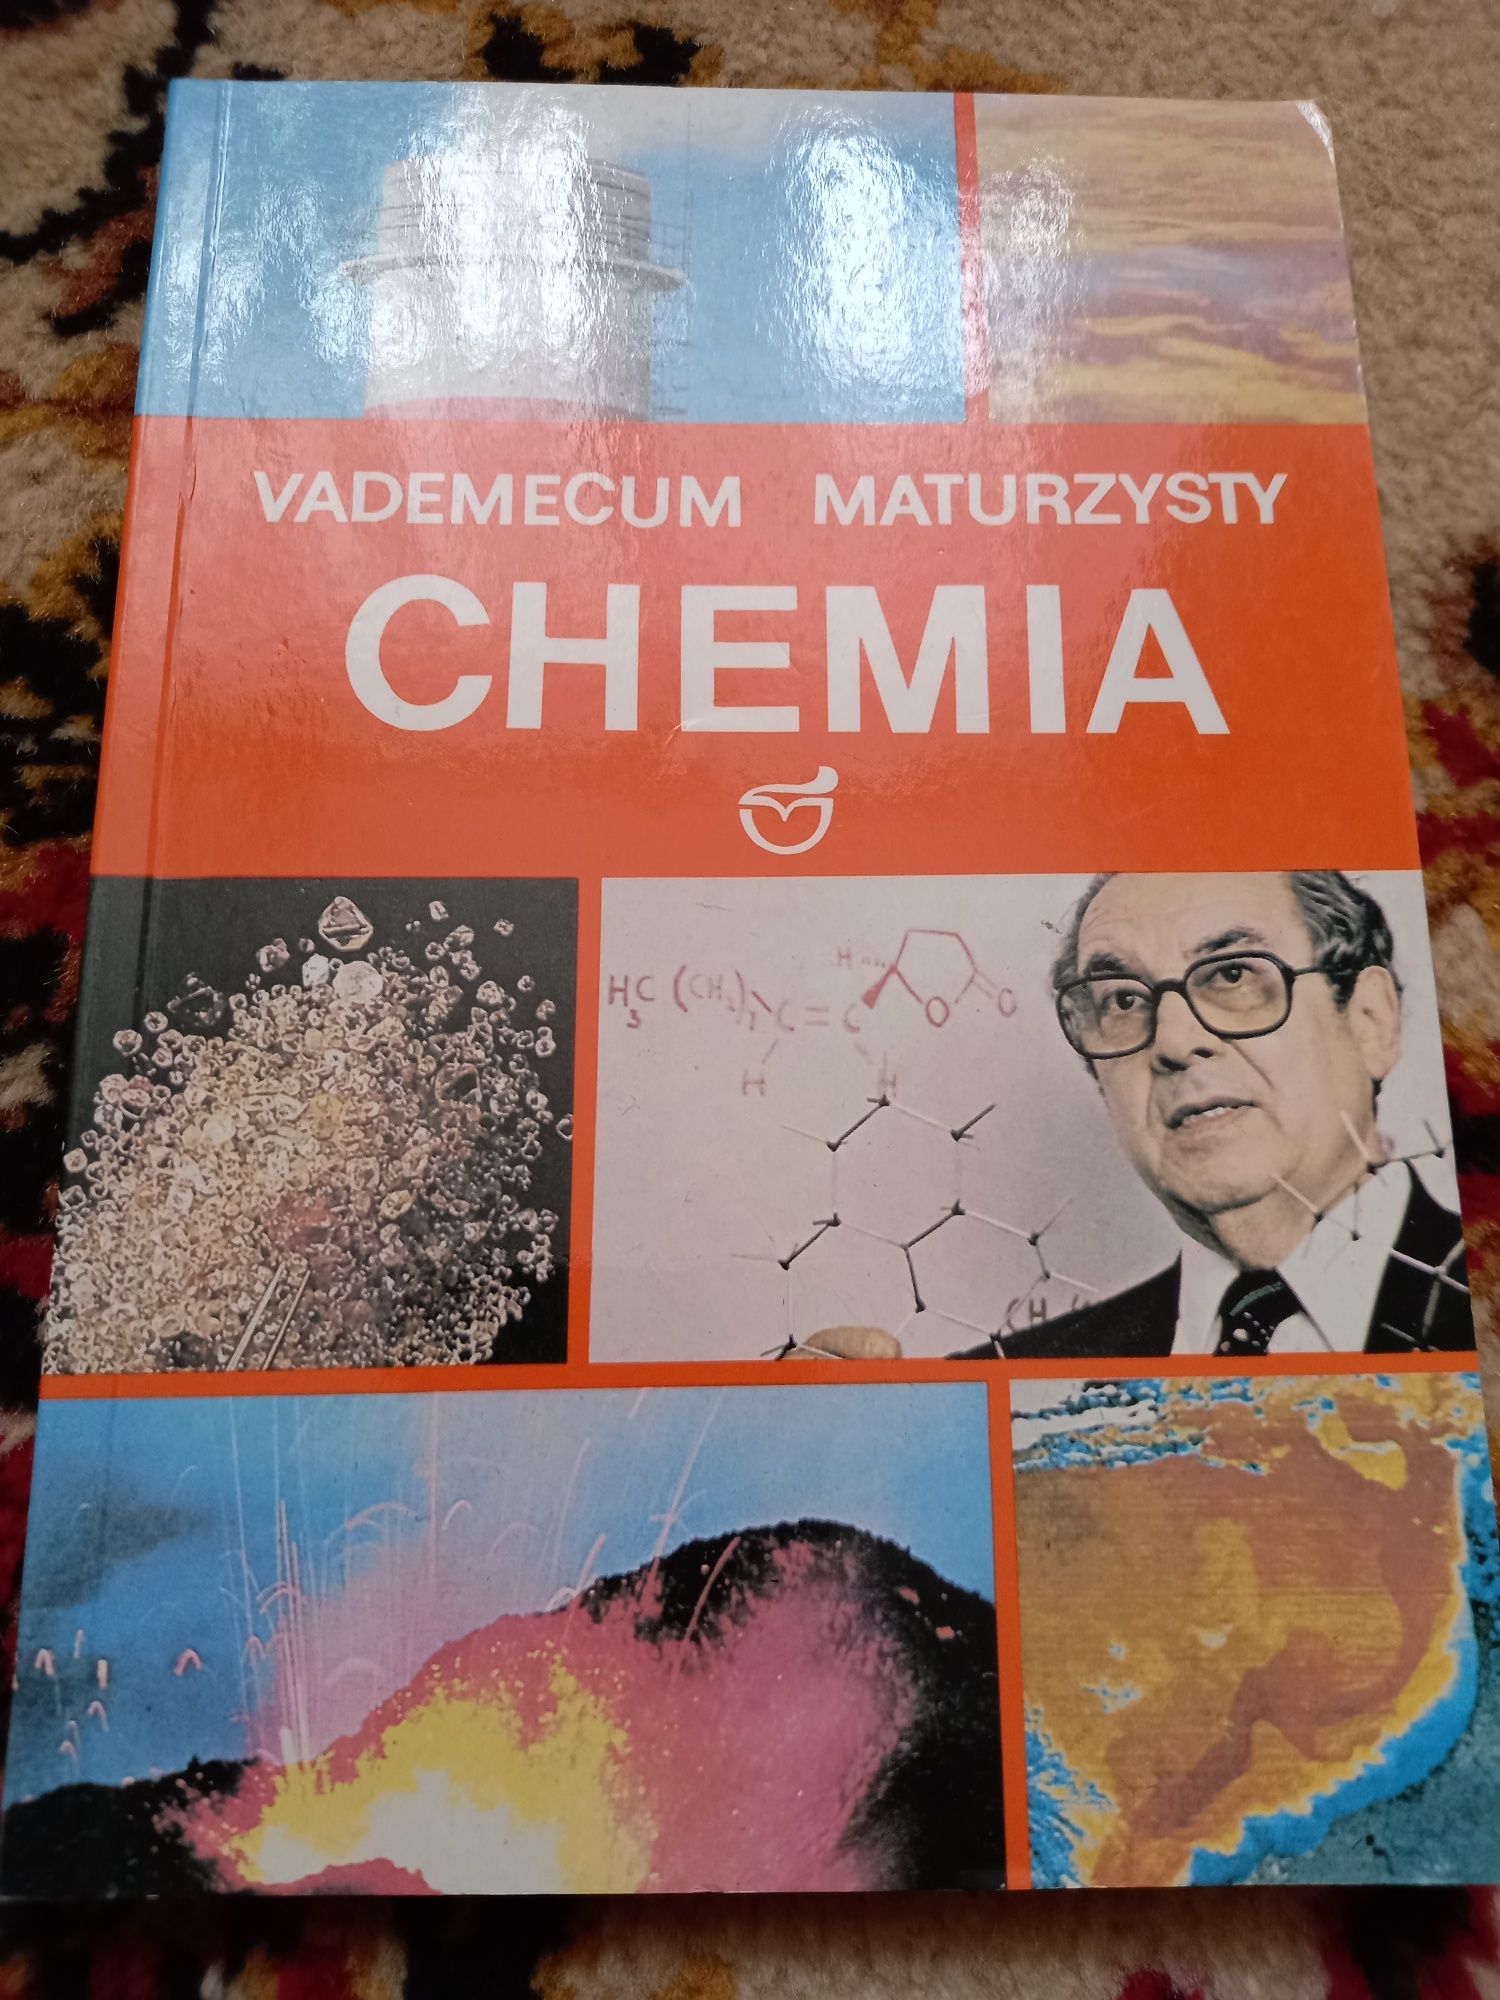 Chemia Vademecum Maturzysty